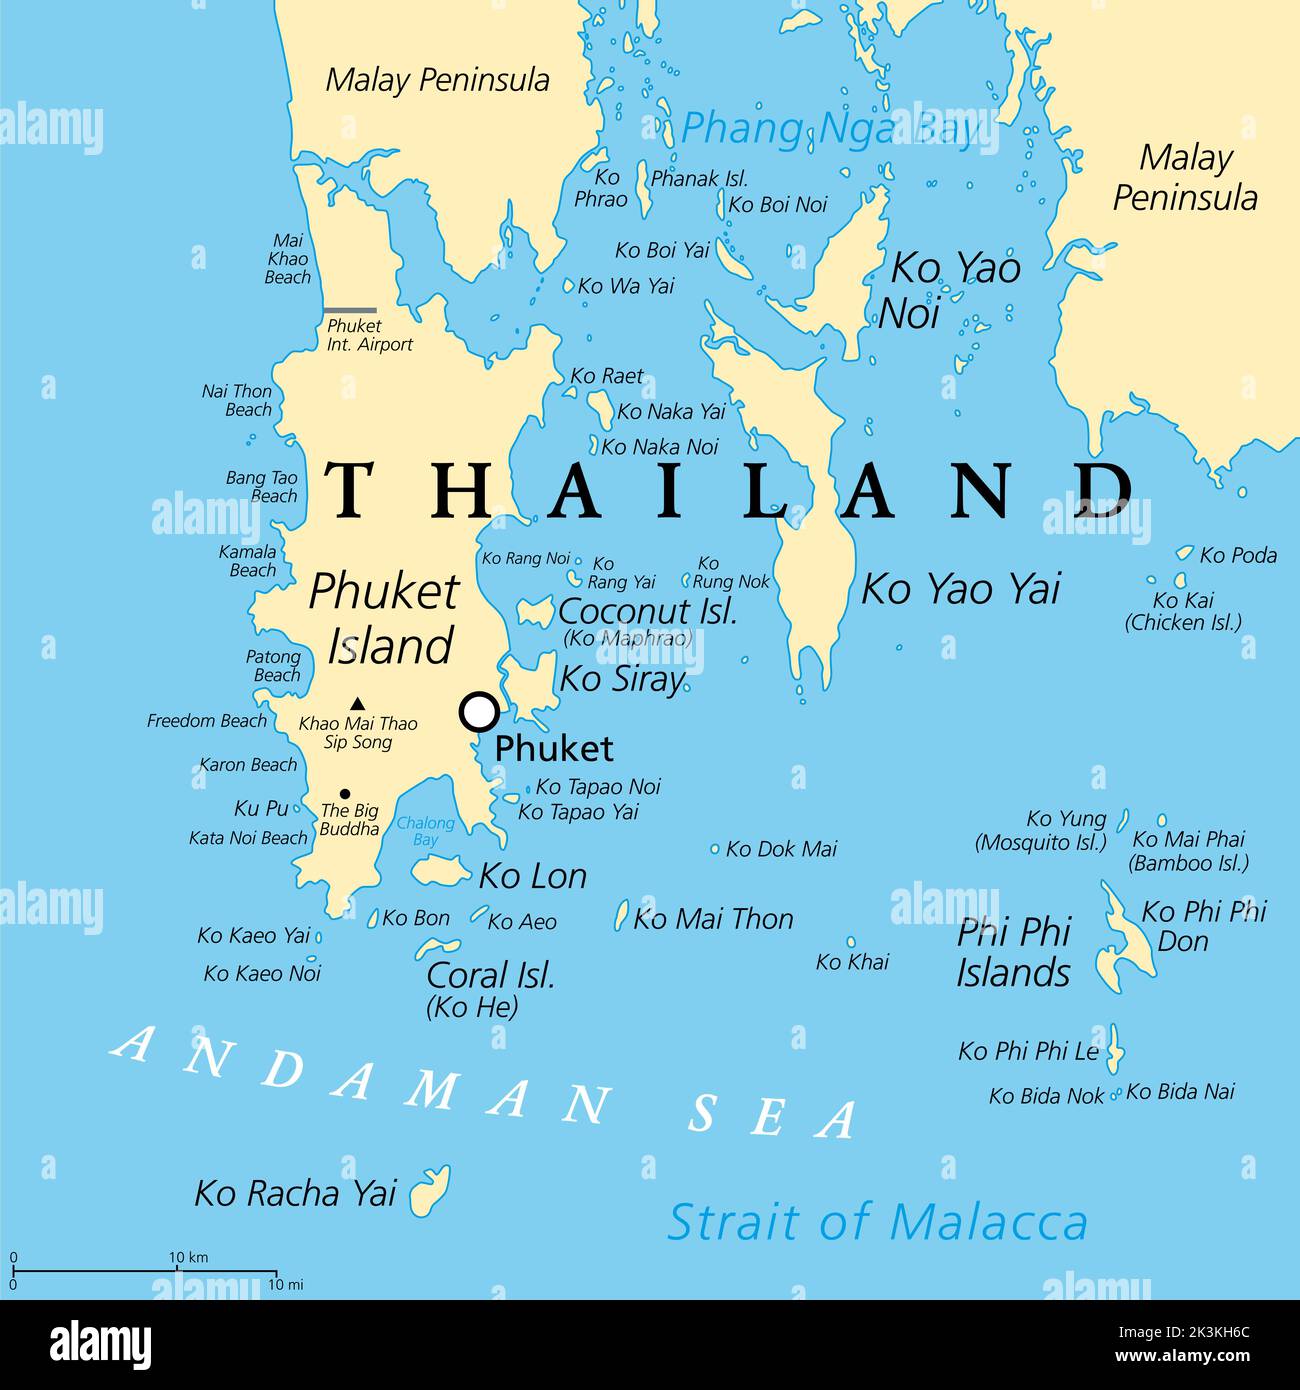 Phuket, größte Insel Thailands, politische Karte mit Umgebung. Beliebte Touristenregion mit vielen Inseln, südlich der Malaiischen Halbinsel. Stockfoto